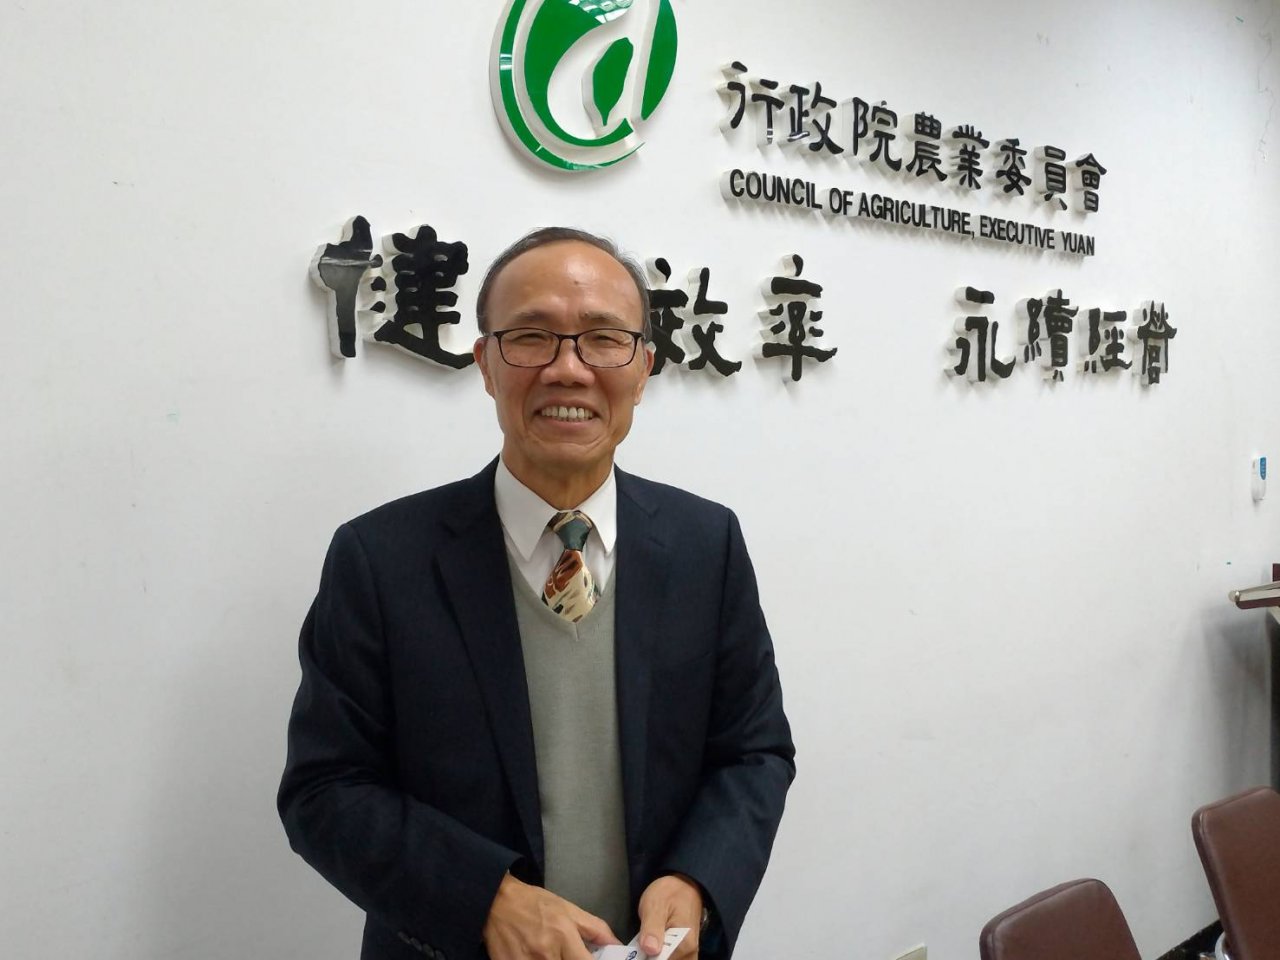 Ủy ban Nông nghiệp muốn có thêm 1,2 năm để quan sát việc vận hành Công ty Phát triển nông nghiệp Đài Loan